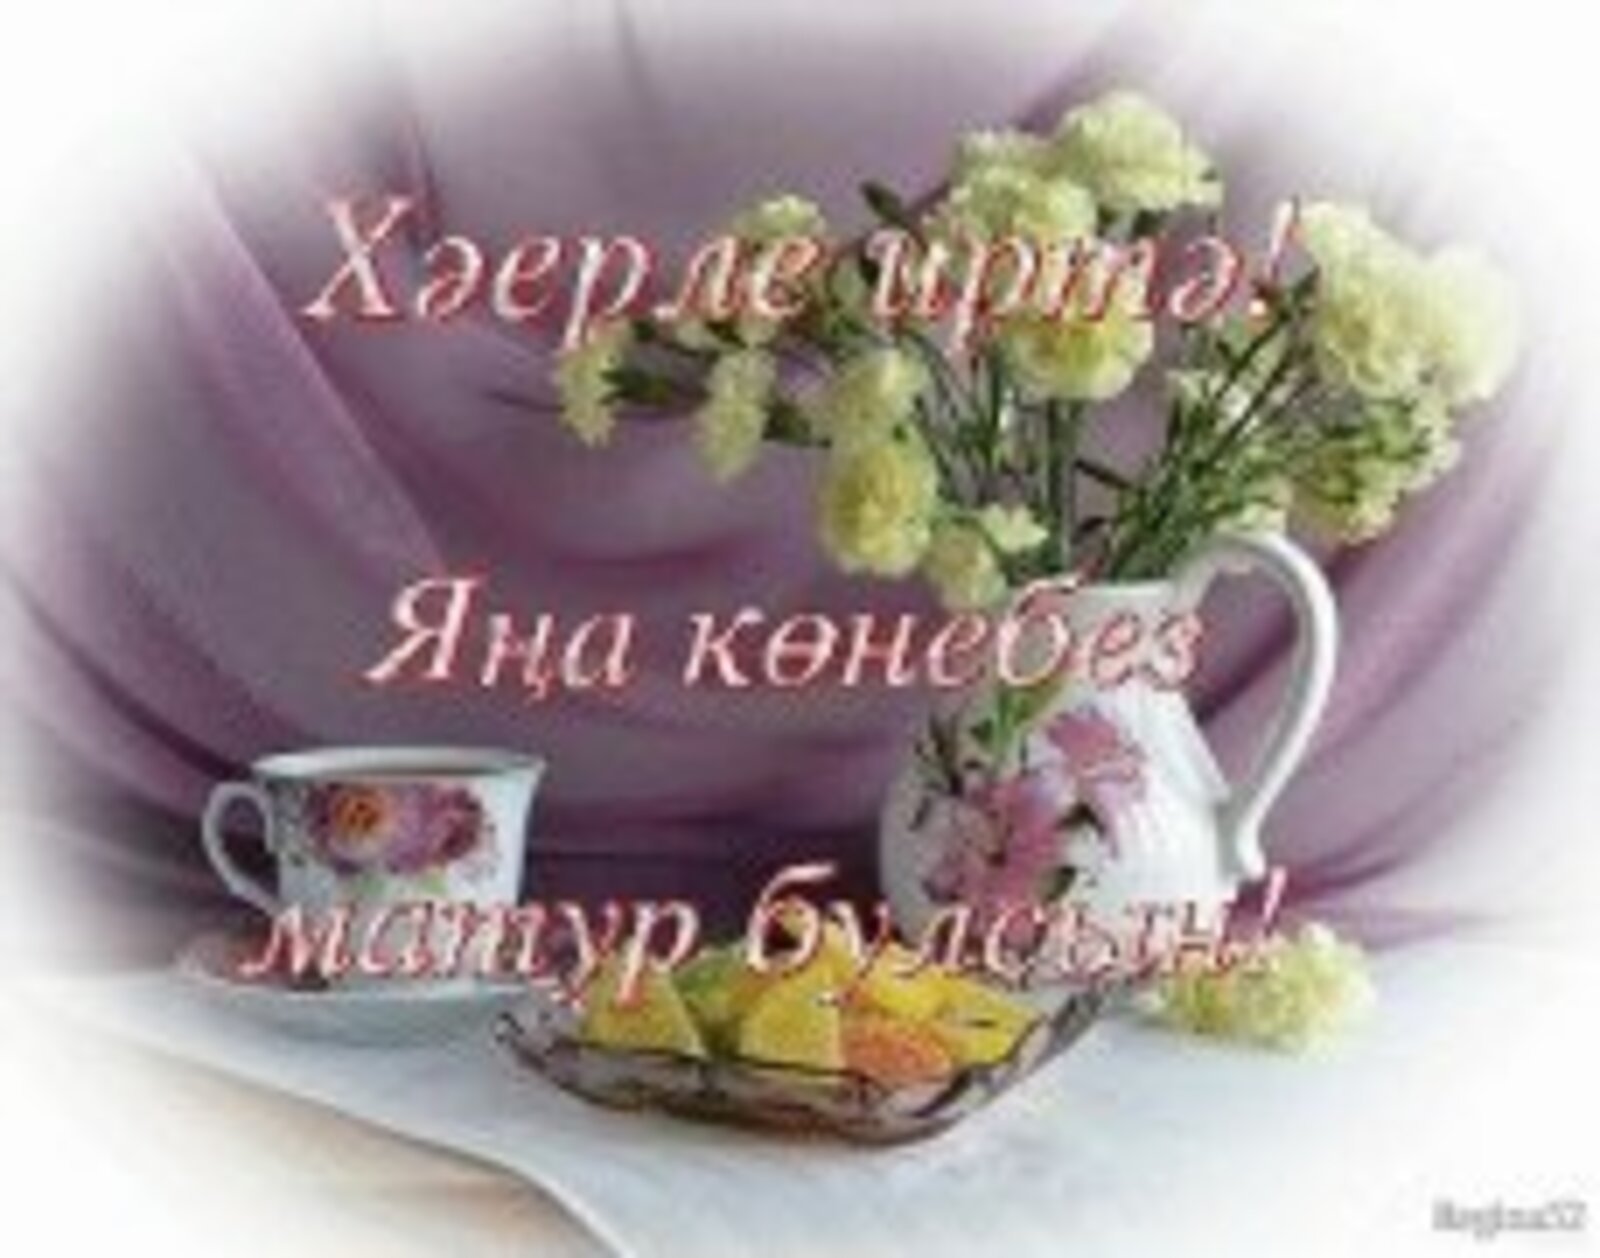 Утренние поздравления на татарском языке - 79 фото